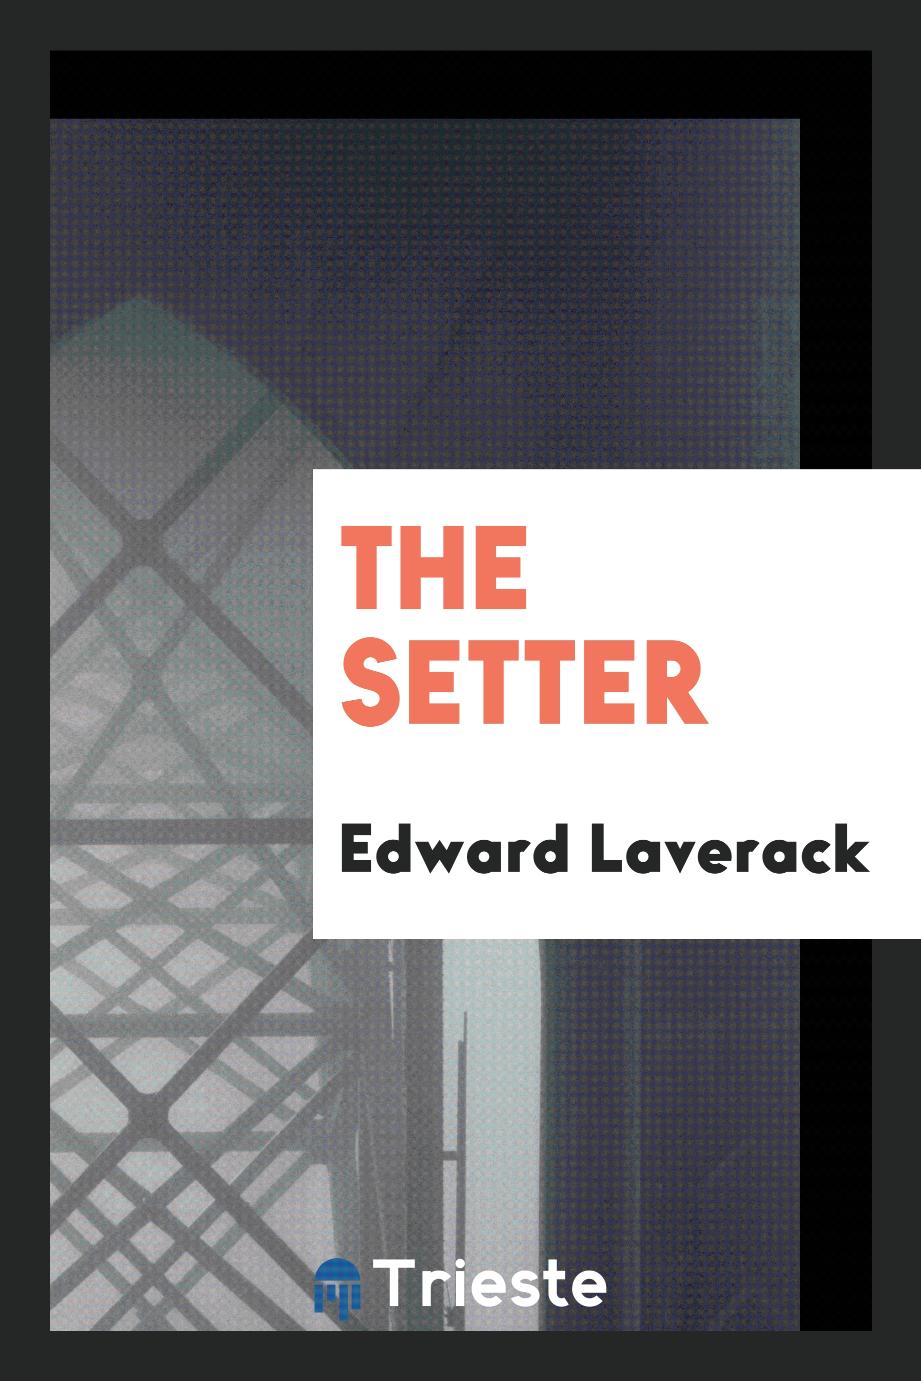 The setter